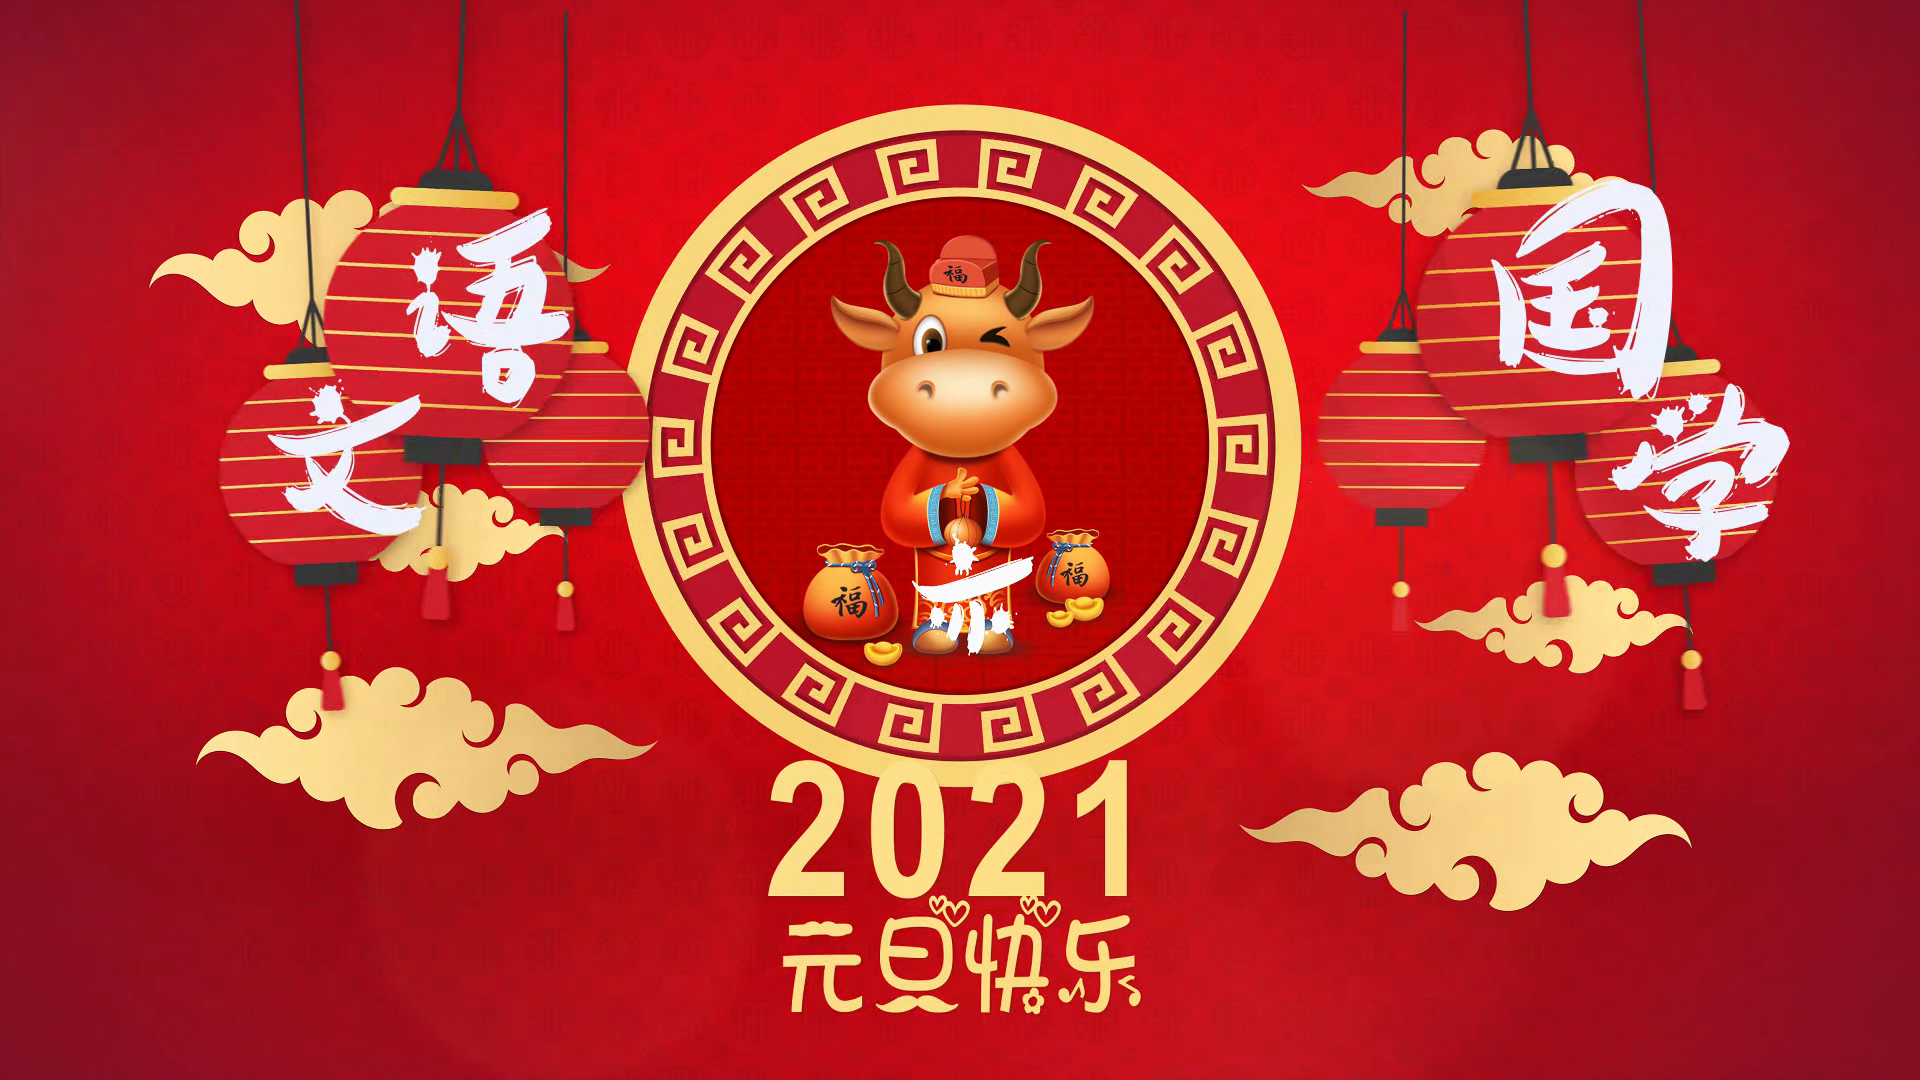 语文亦国学恭祝2021年新年快乐